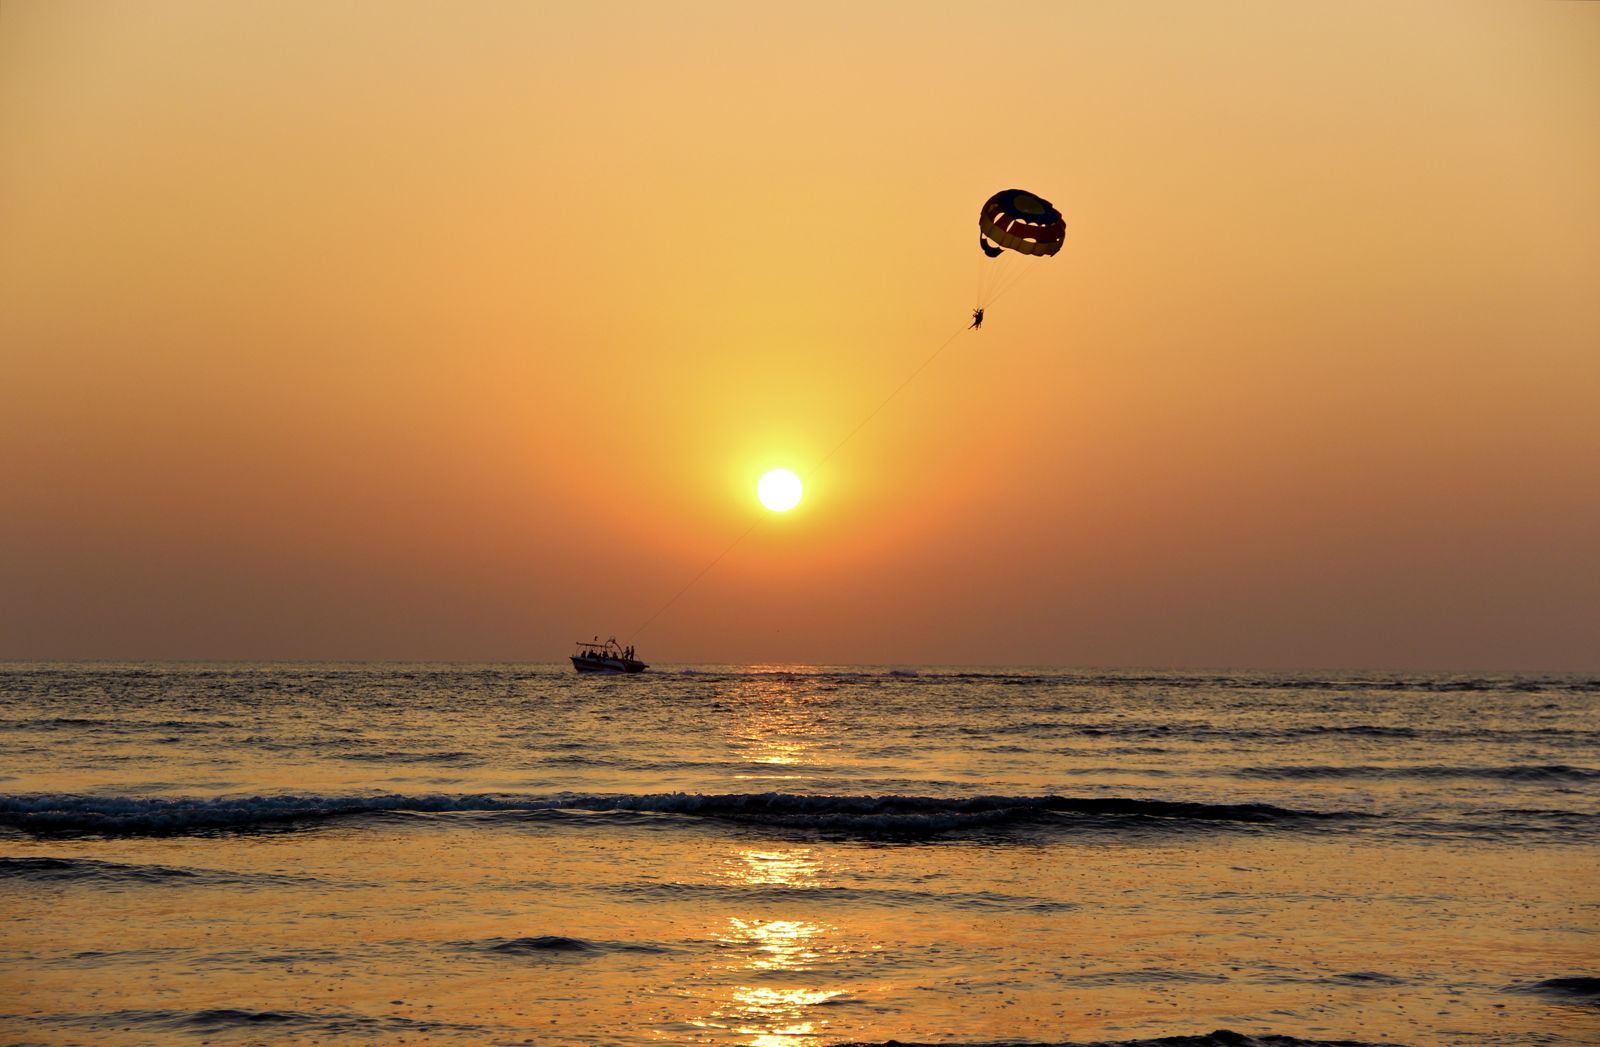 Ocean Sunset Beach Summer Waves Adventure Flying Wallpaper